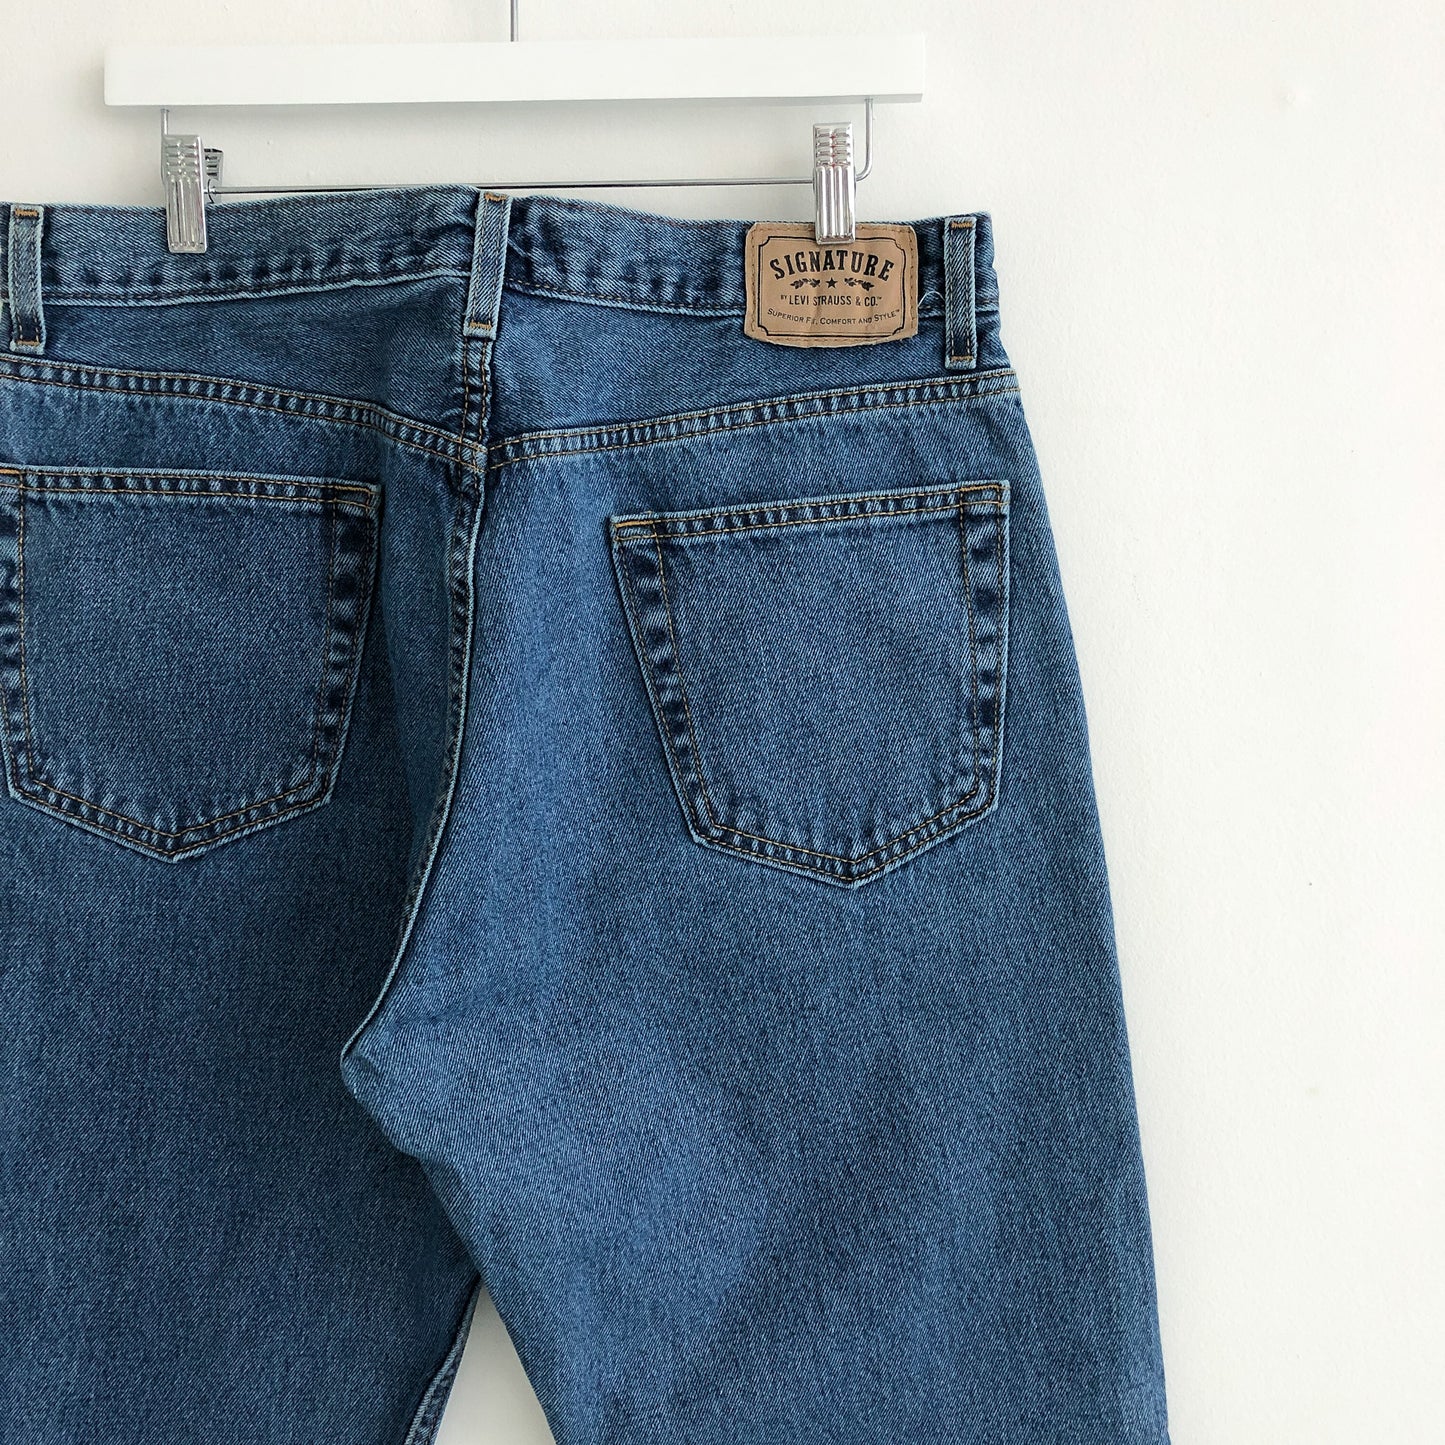 Levi’s Signature Medium Wash Denim Jeans